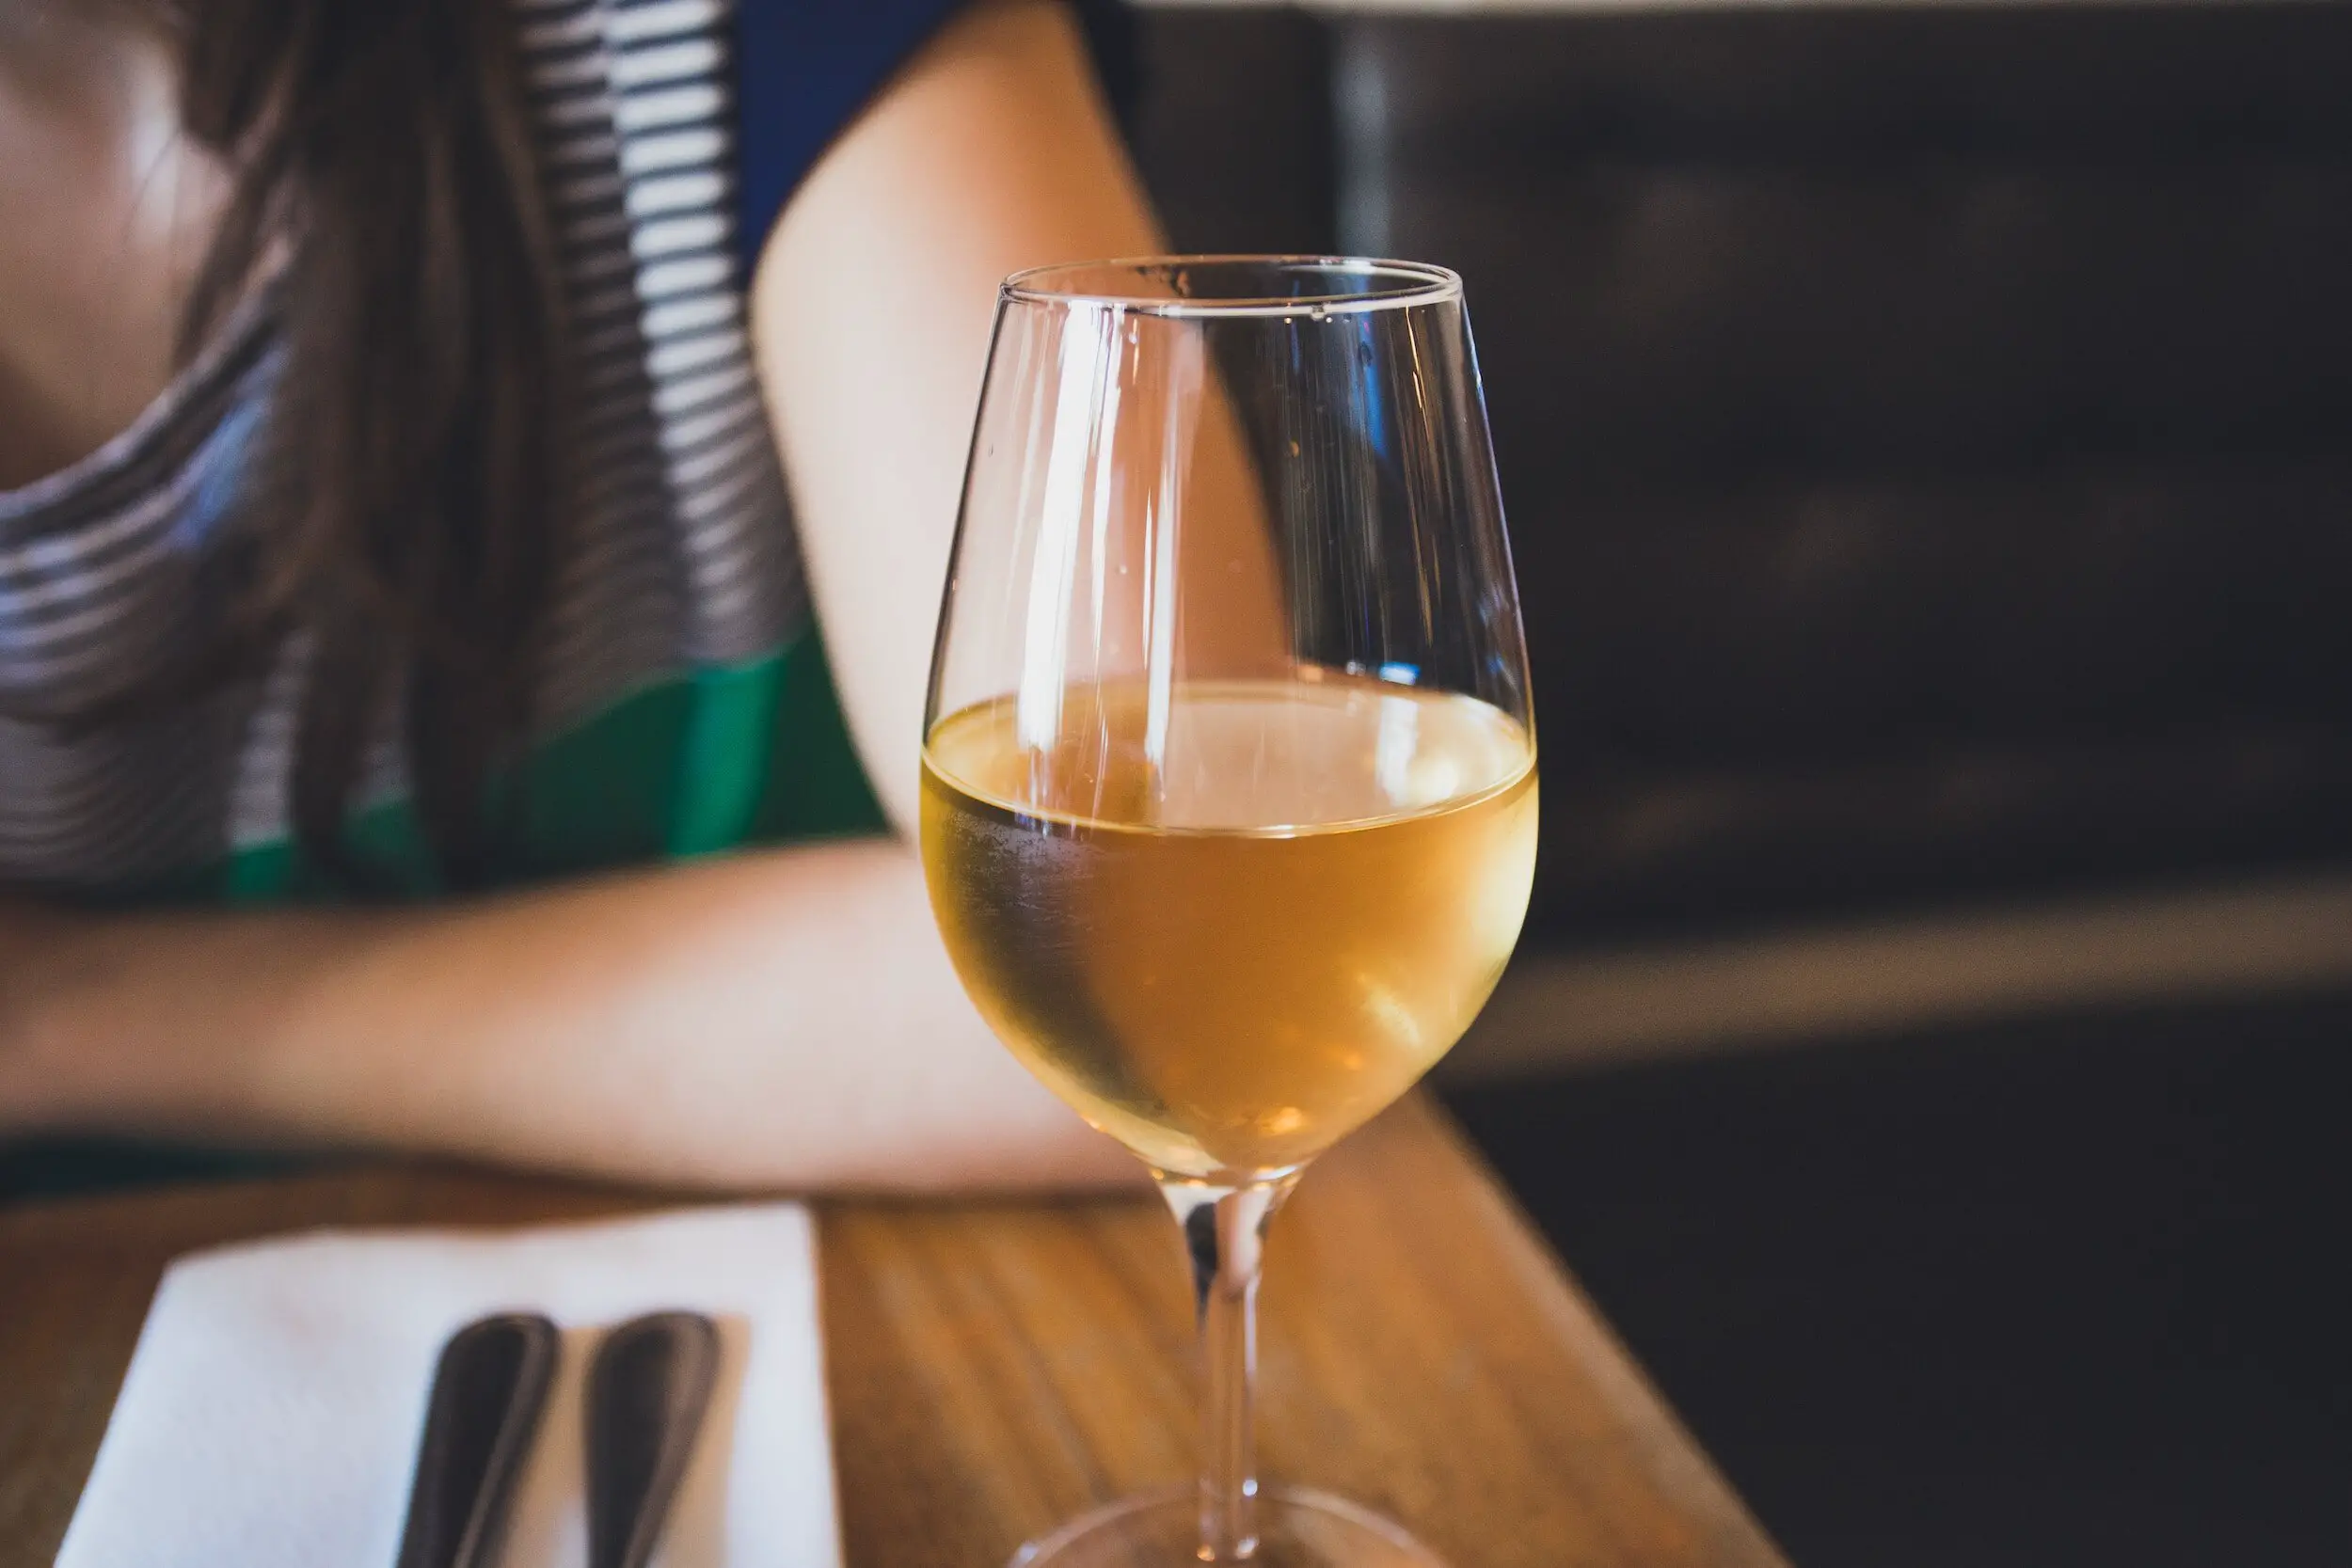 pinot blanc wine guide - white wine